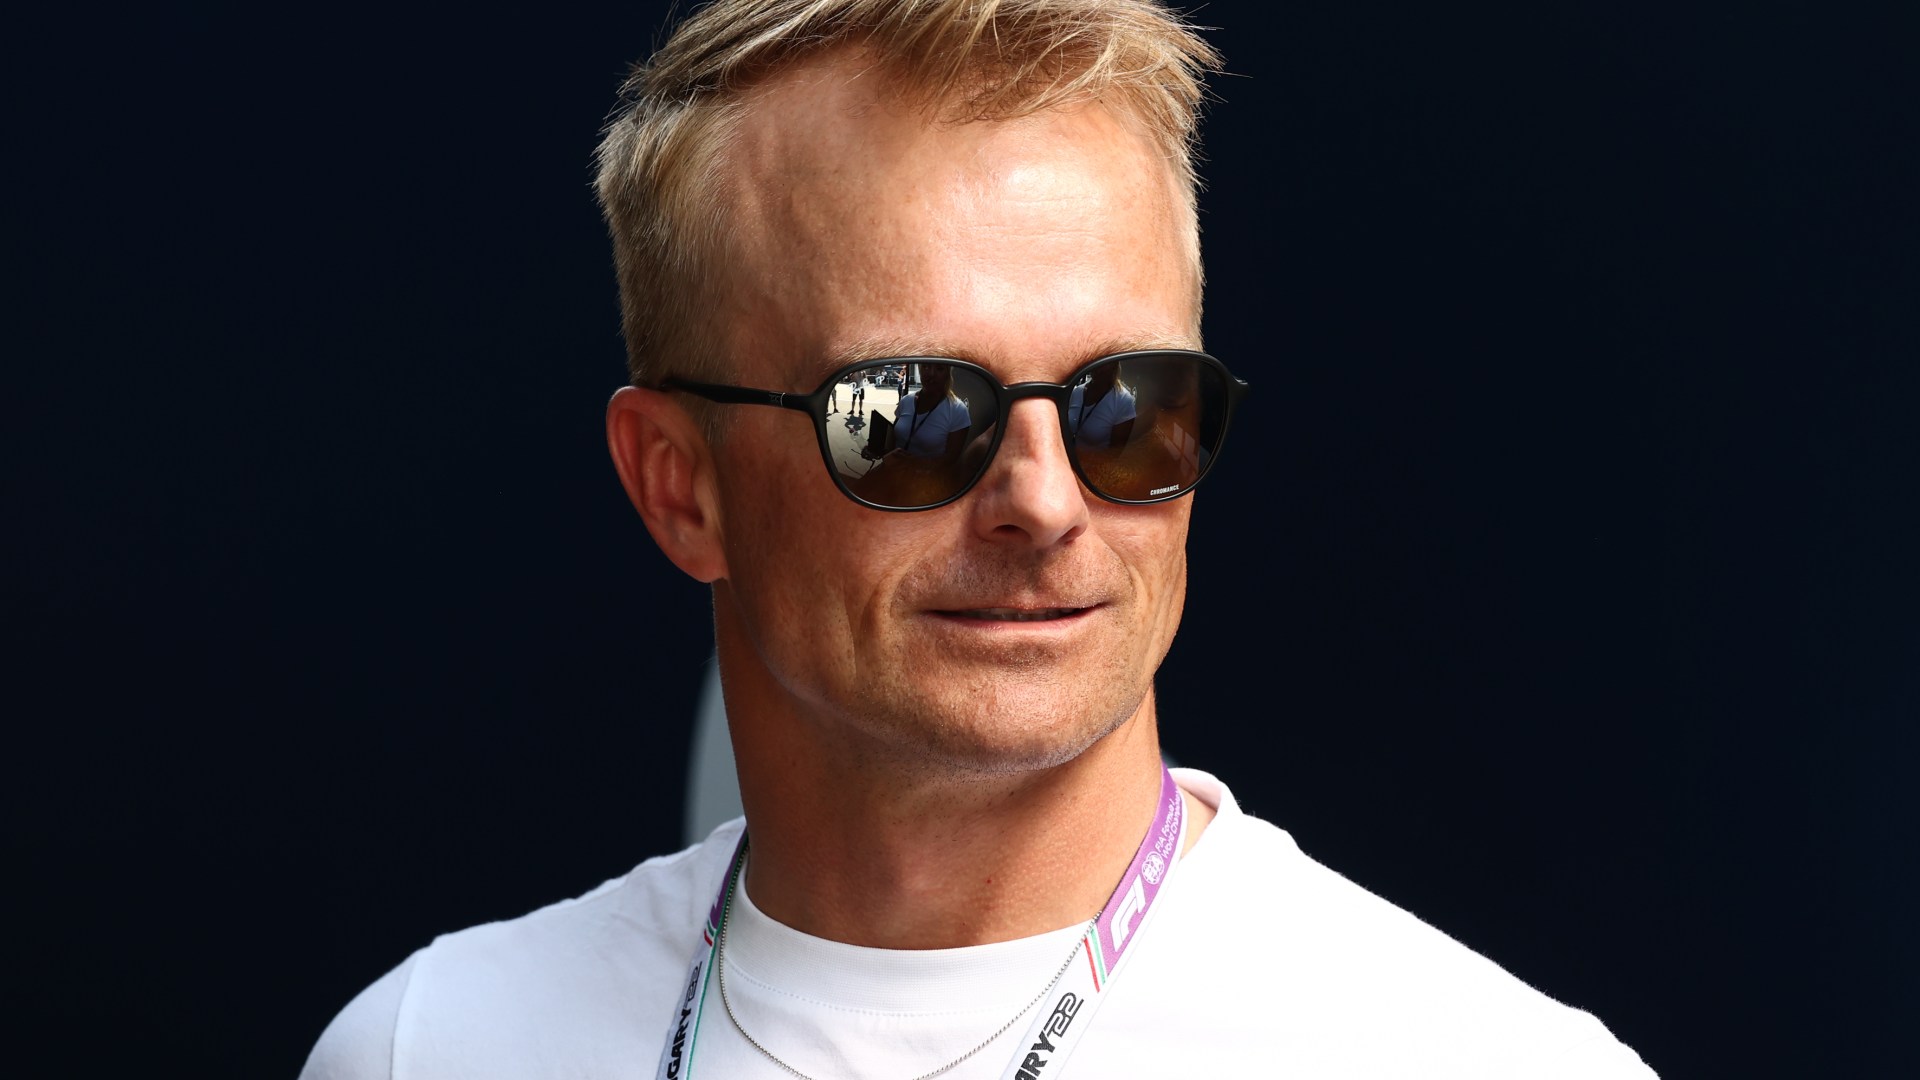 Former F1 star Heikki Kovalainen, 42, to undergo life-saving open-heart surgery